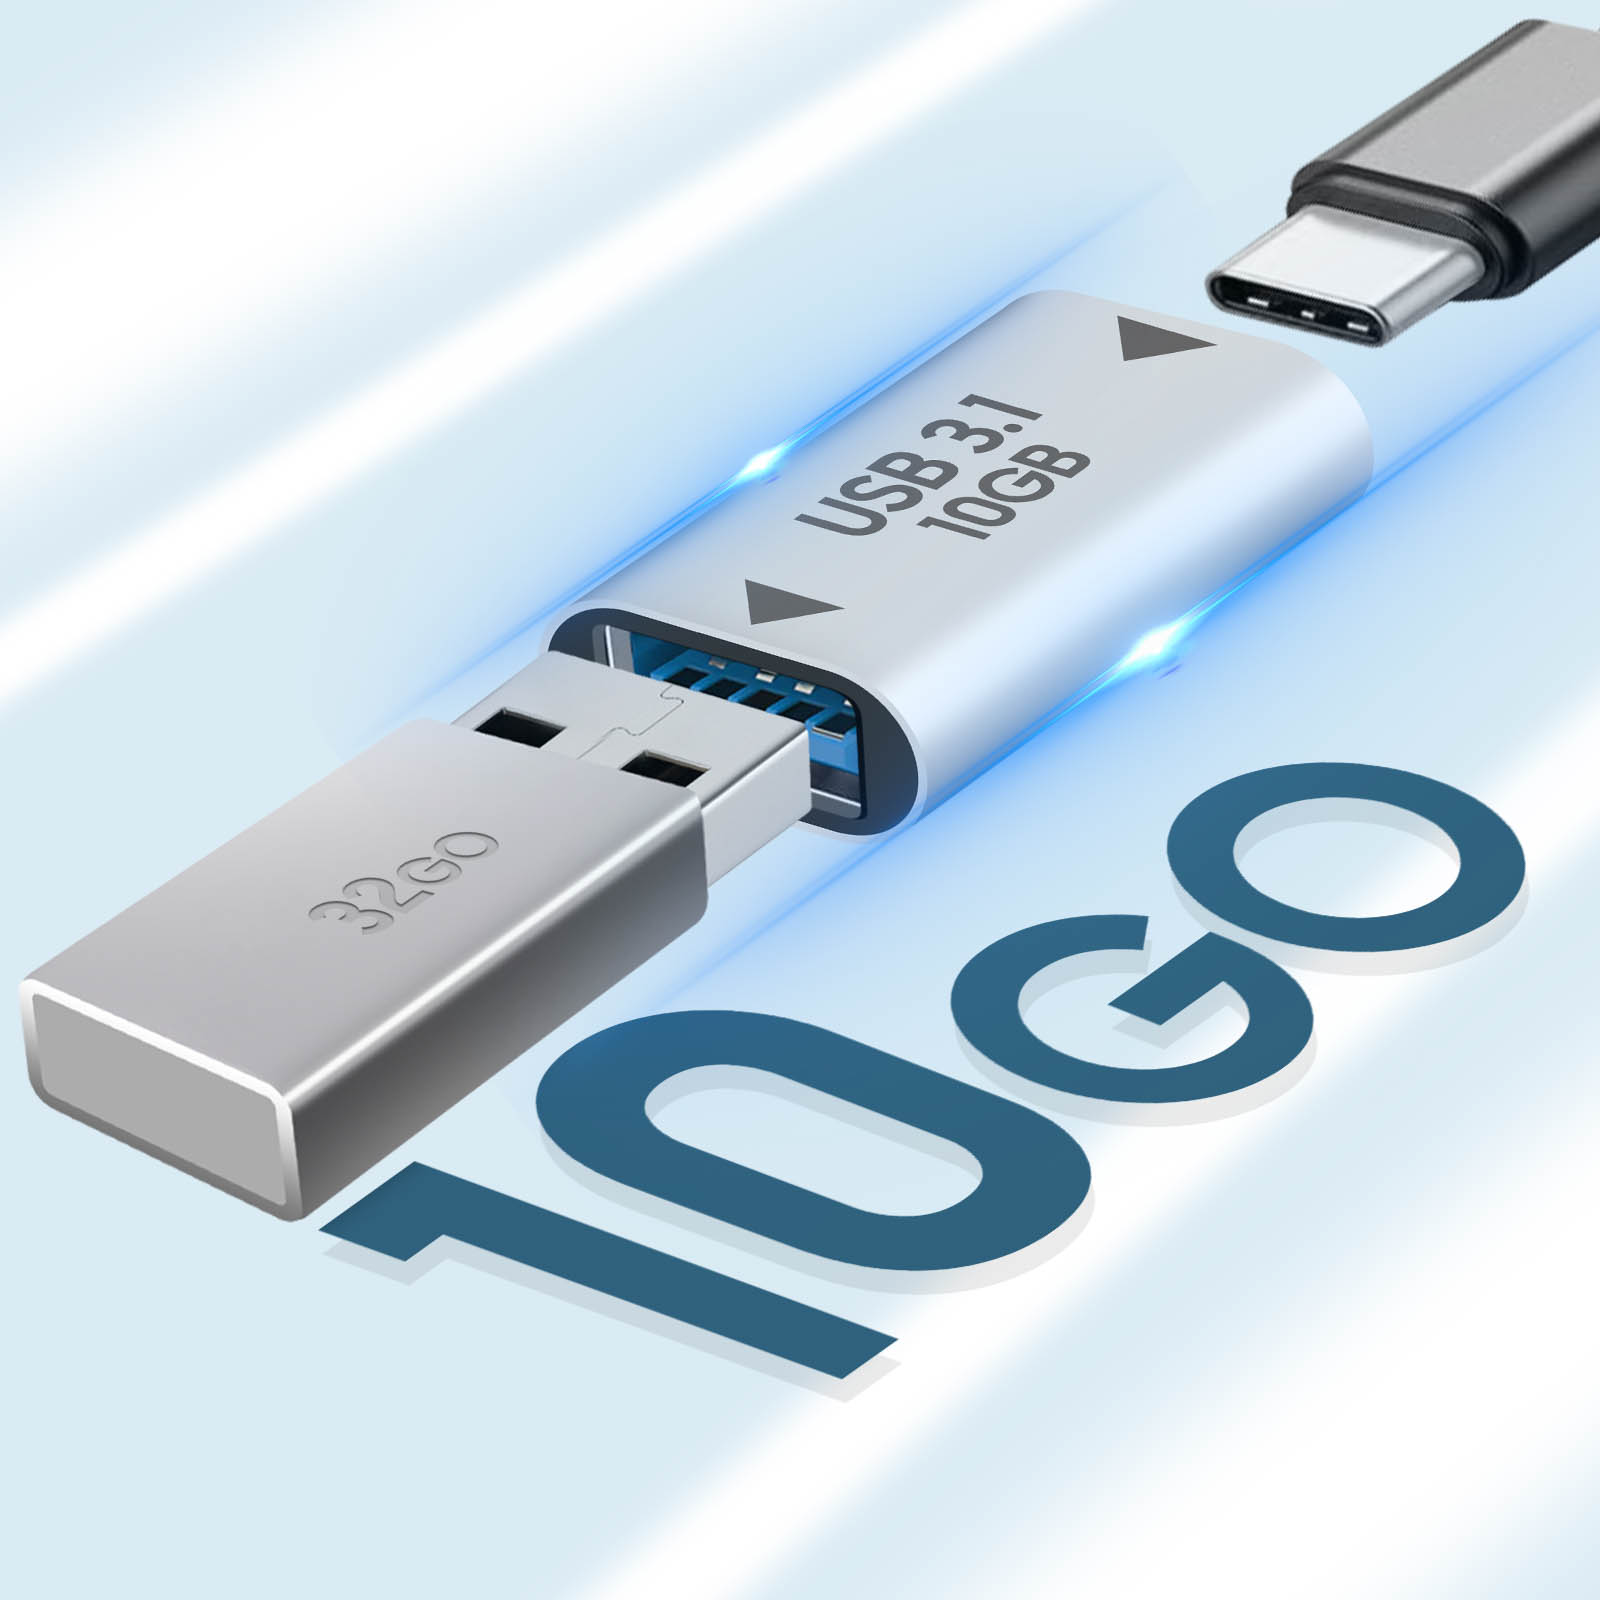 Convertisseur USB C femelle vers USB 3.1 femelle, charge +